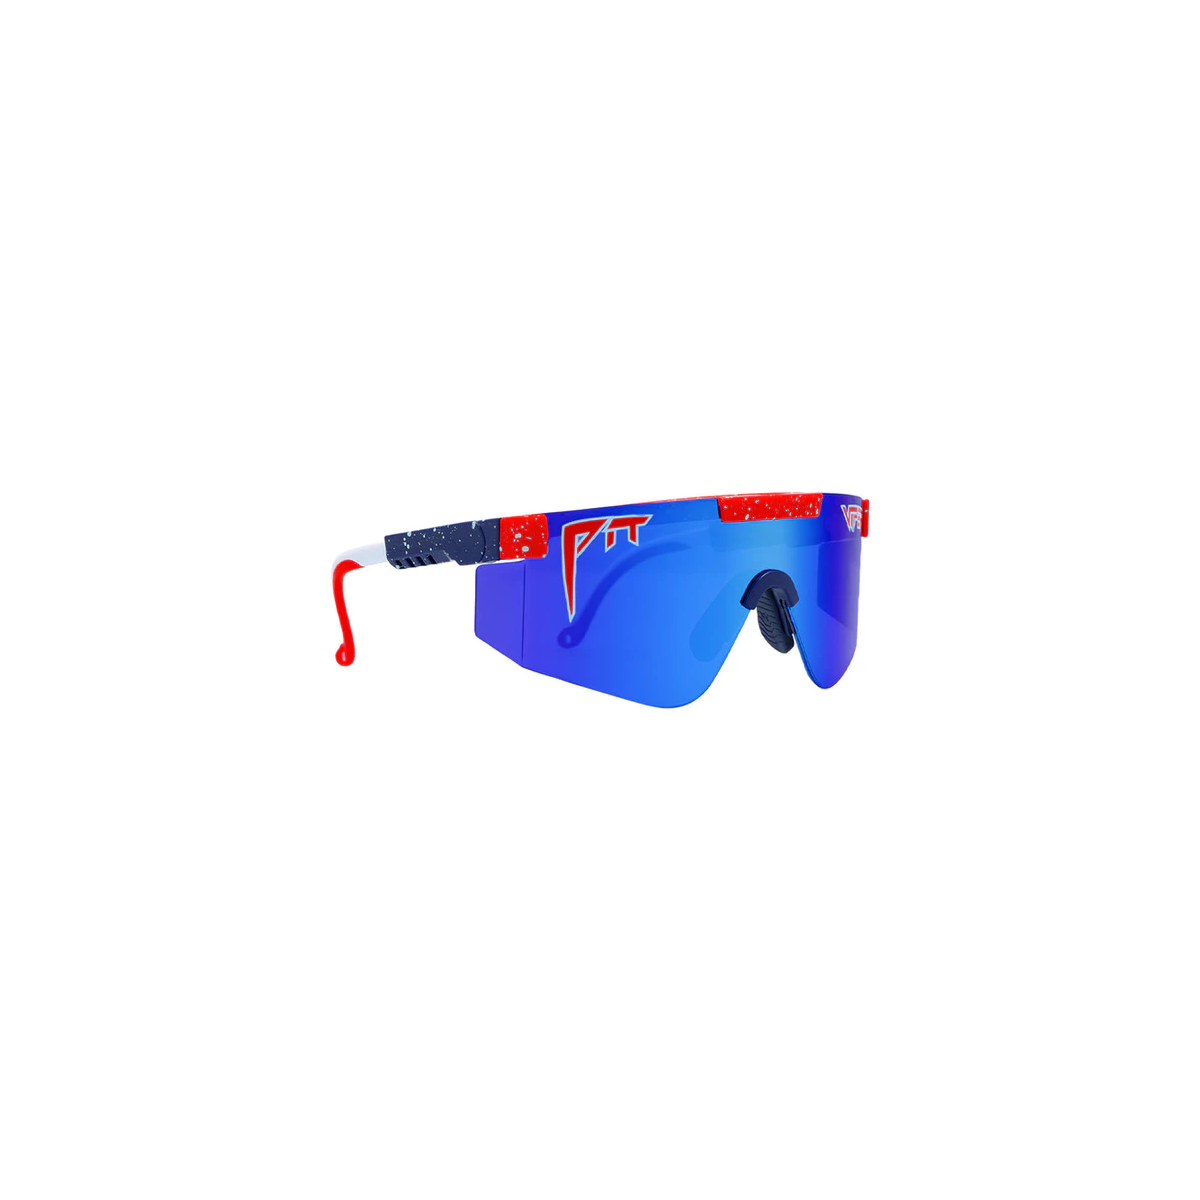 otro lateral de las Gafas de sol Pit Viper The 2000 The Basketball Team lente azul marco negro y rojo